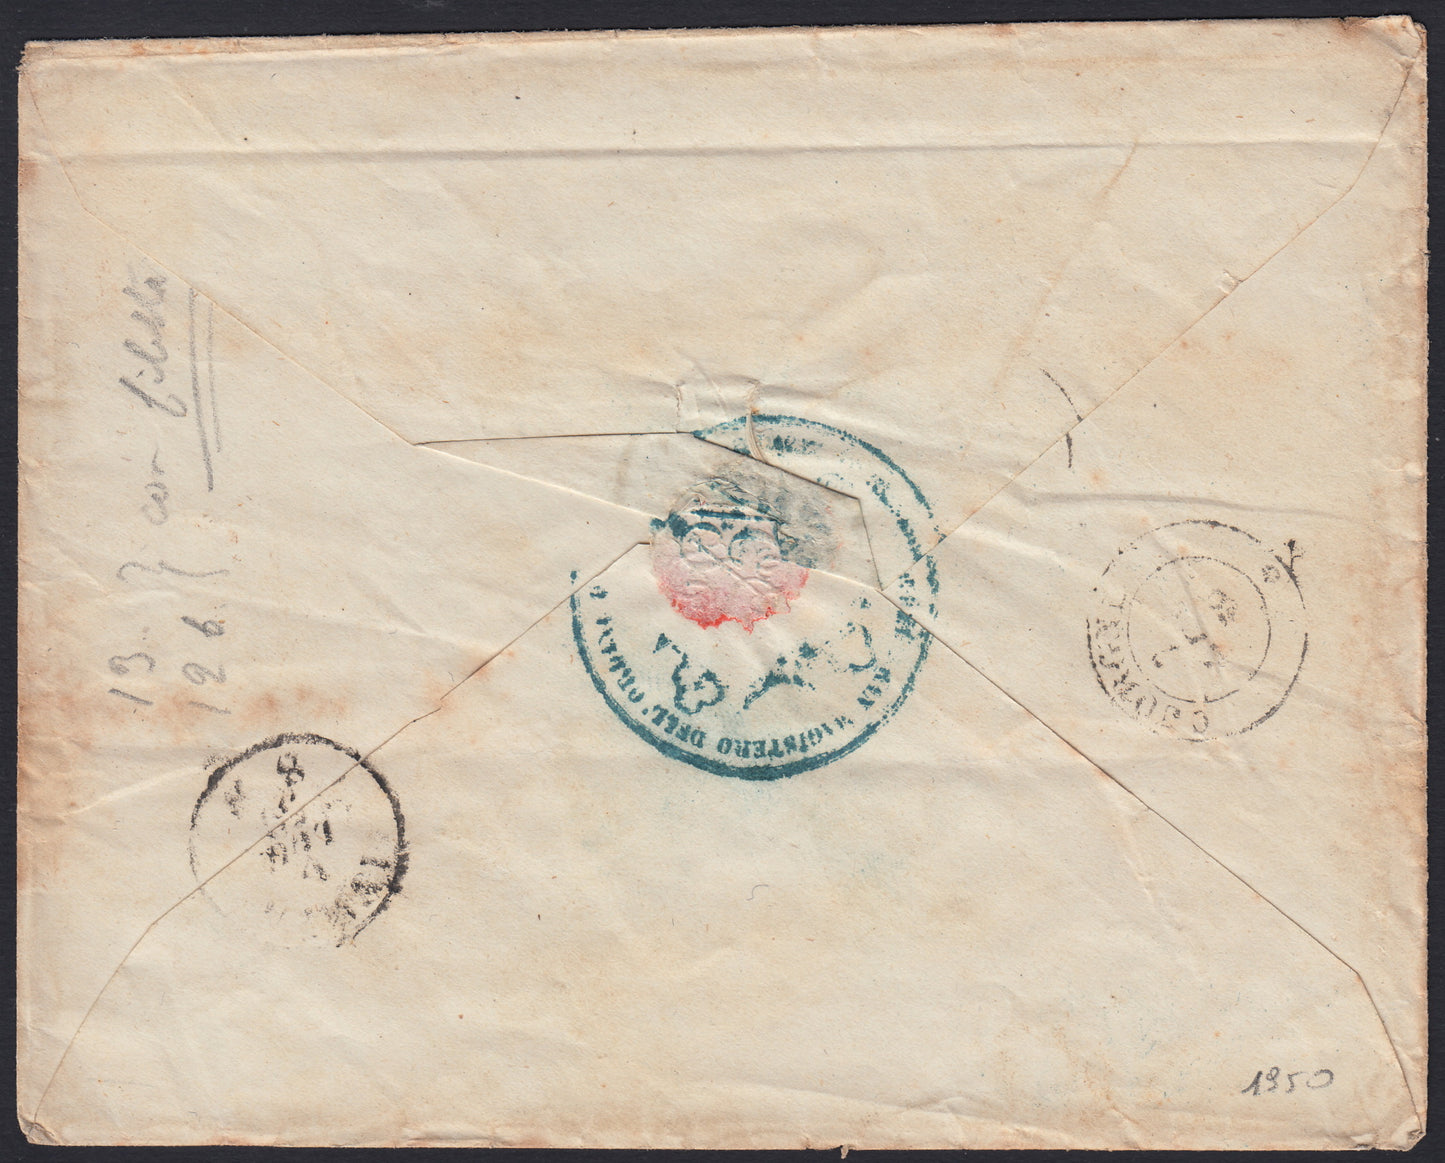 155 - 1859 - IV emissione, Lettera spedita da Torino per Cuorgnè 6/7/59 affrancata con c. 40 vermiglio mattone tiratura 1859 (16Ba)